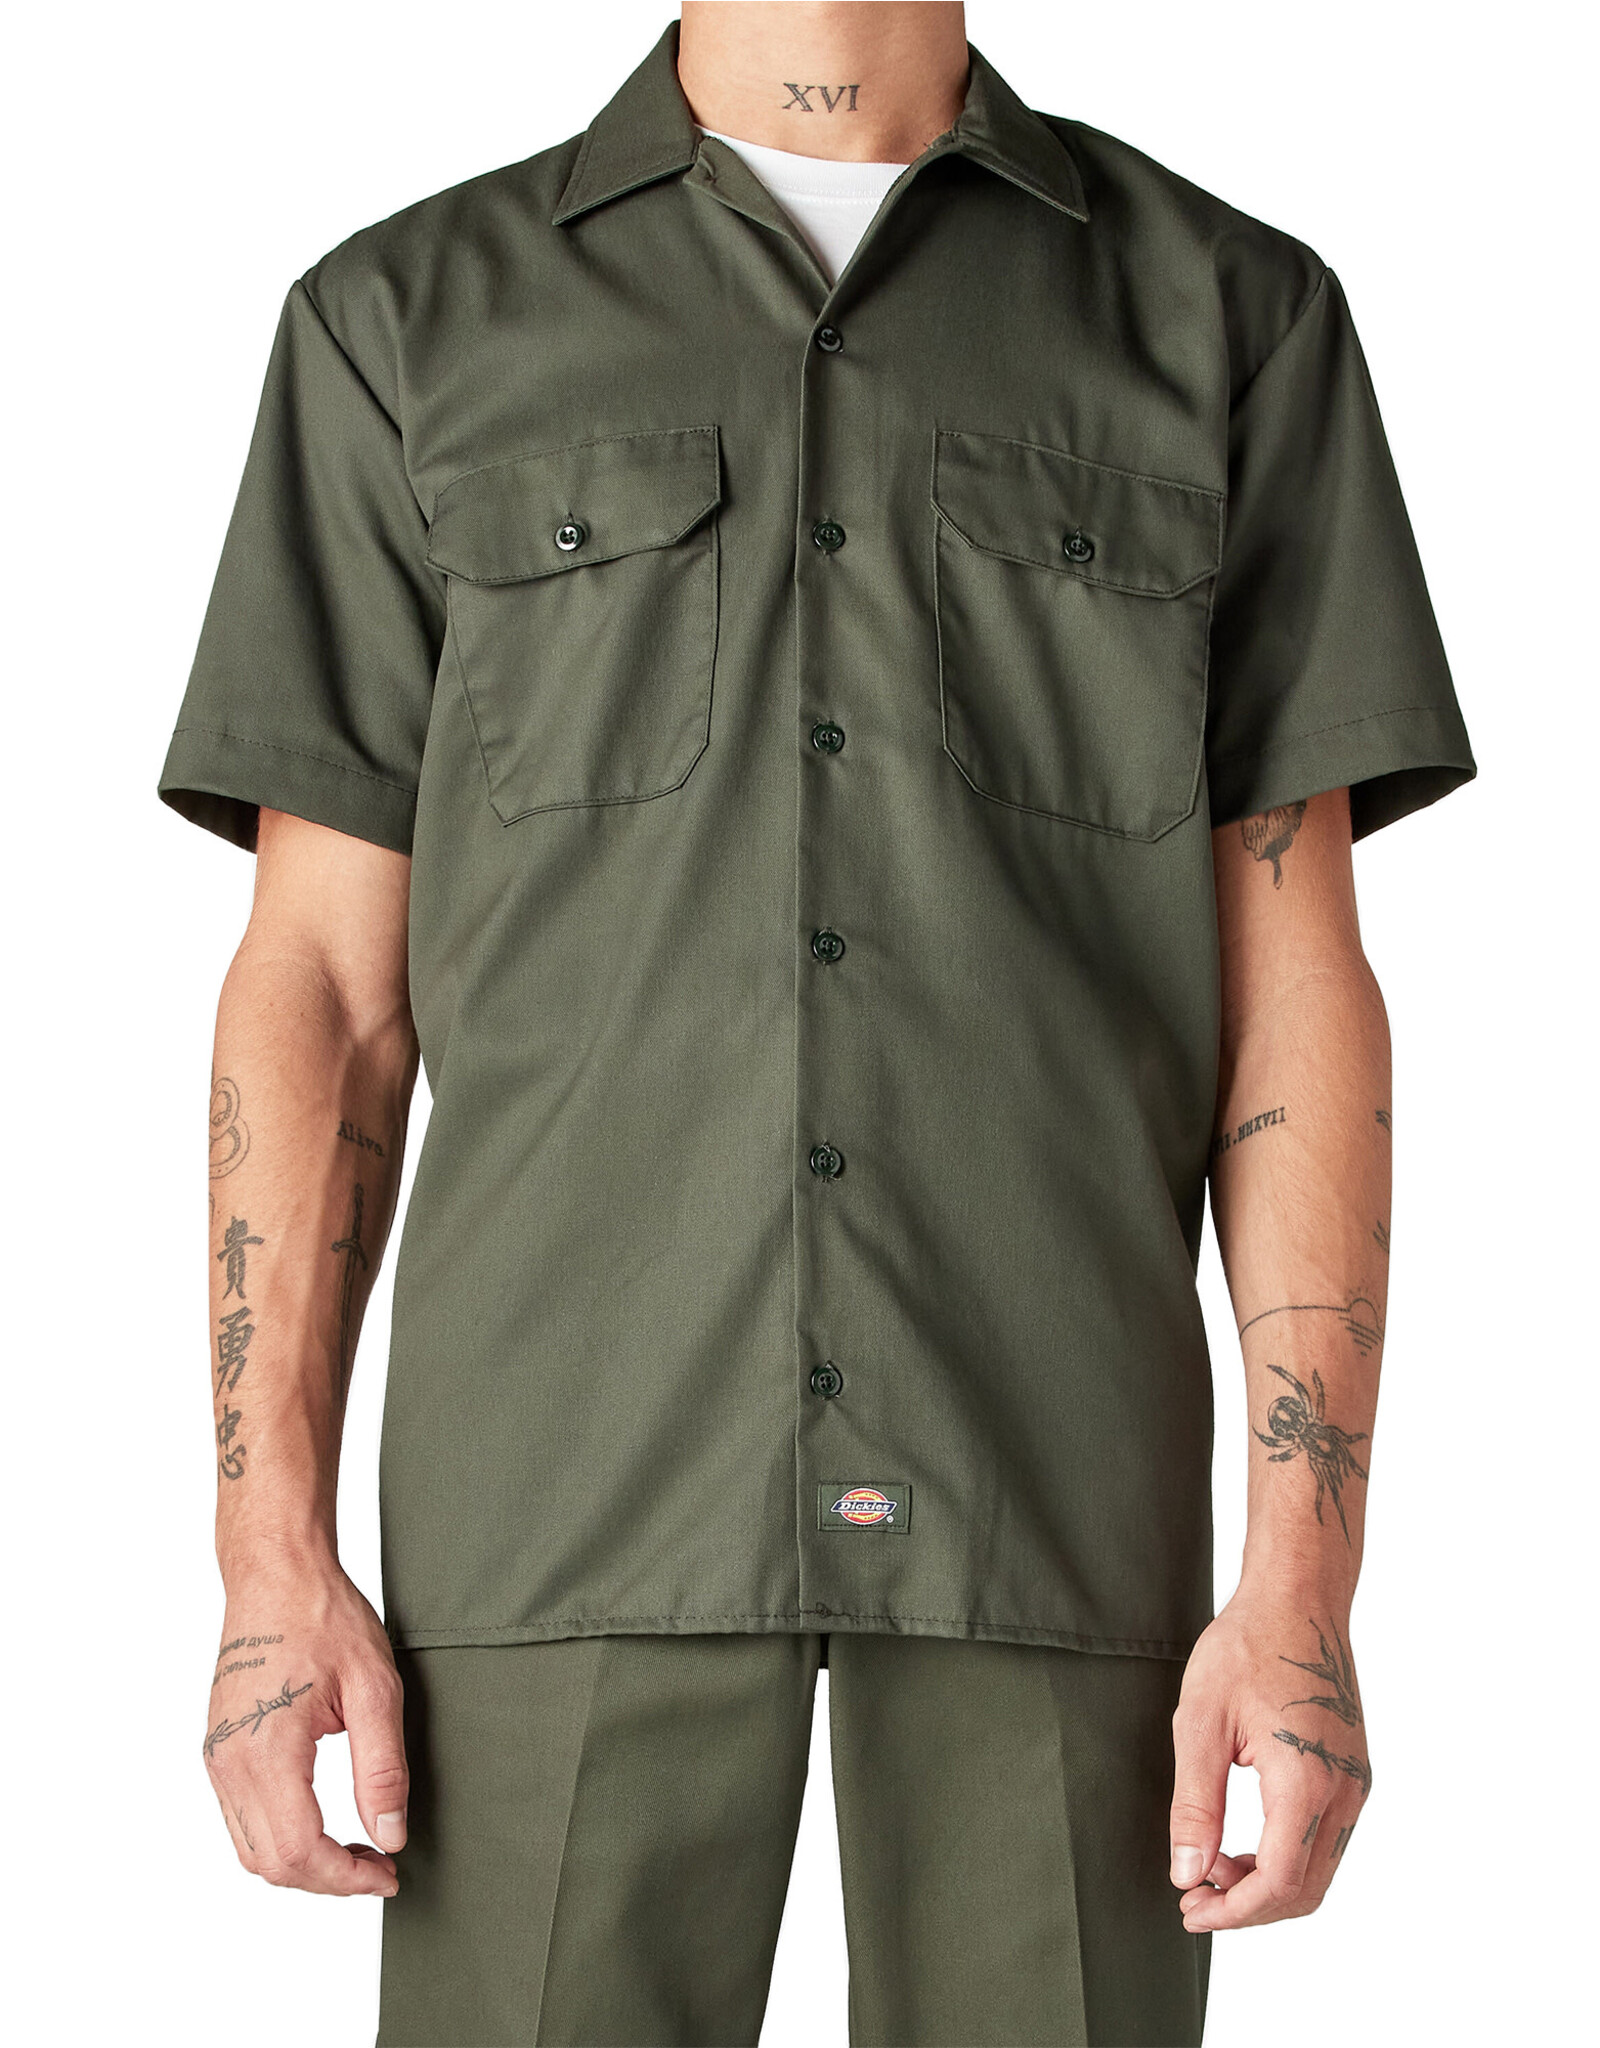 DICKIES Short Sleeve Work Shirt Olive Green Original Fit - 1574OG